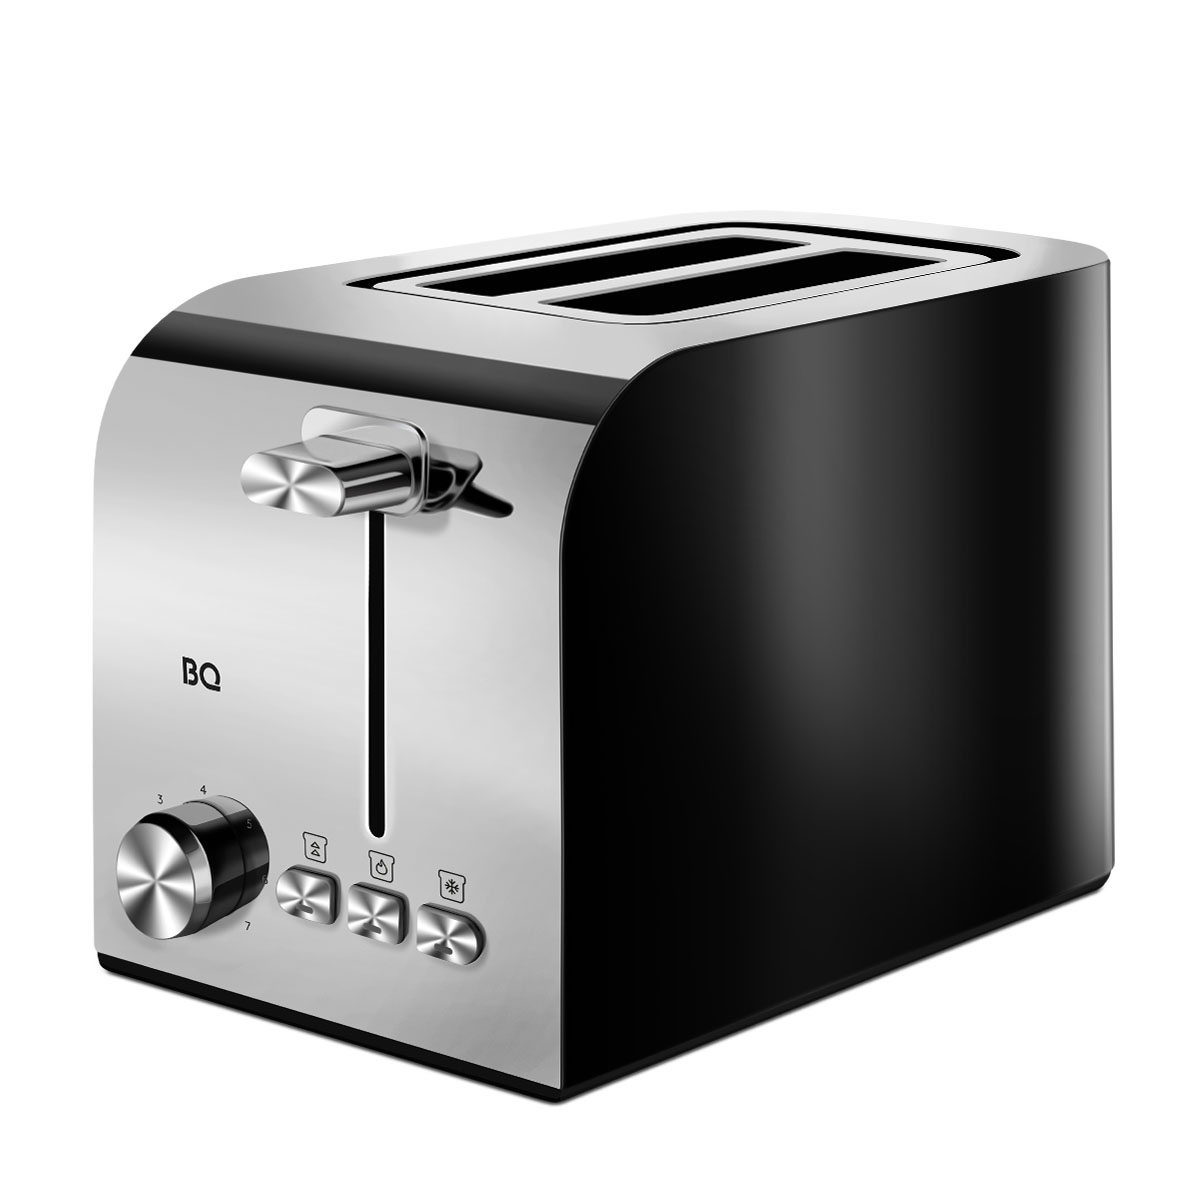 Тостер BQ T2000 серебристый, черный тостер homestar hs 2002 750 вт 7 режимов прожарки 2 тоста бирюзовый